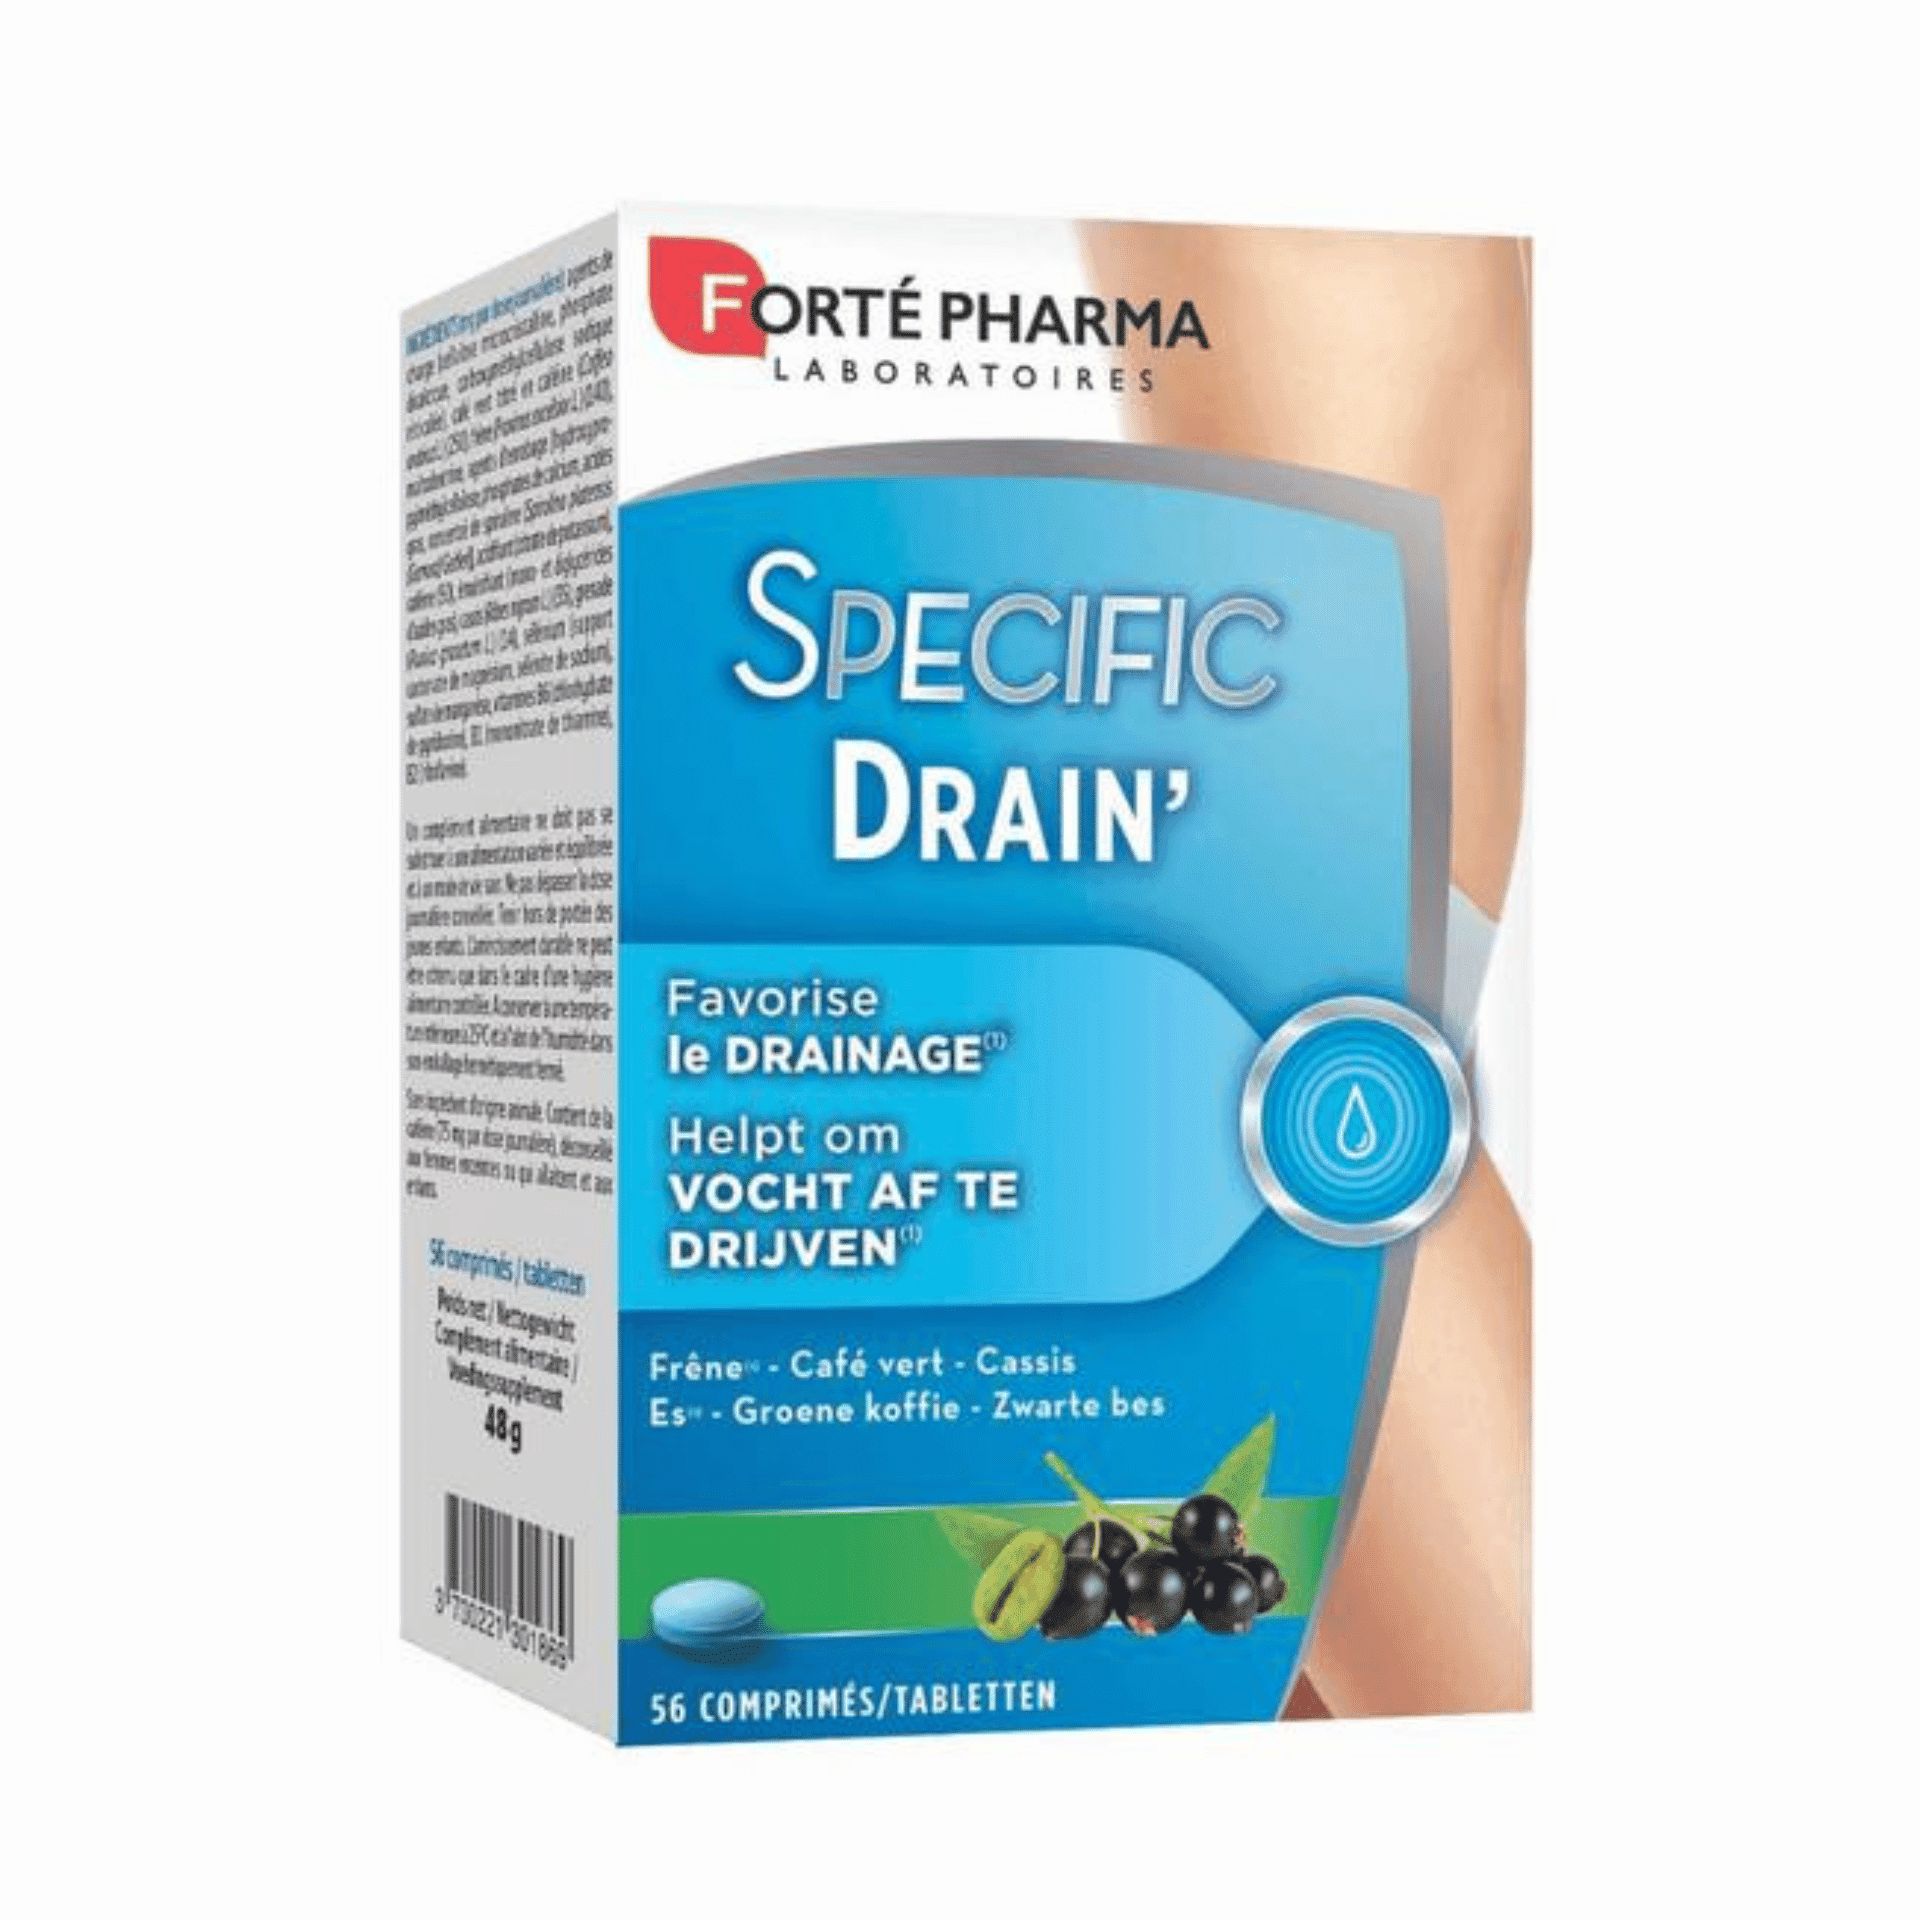 Forté Pharma Specific Drain'